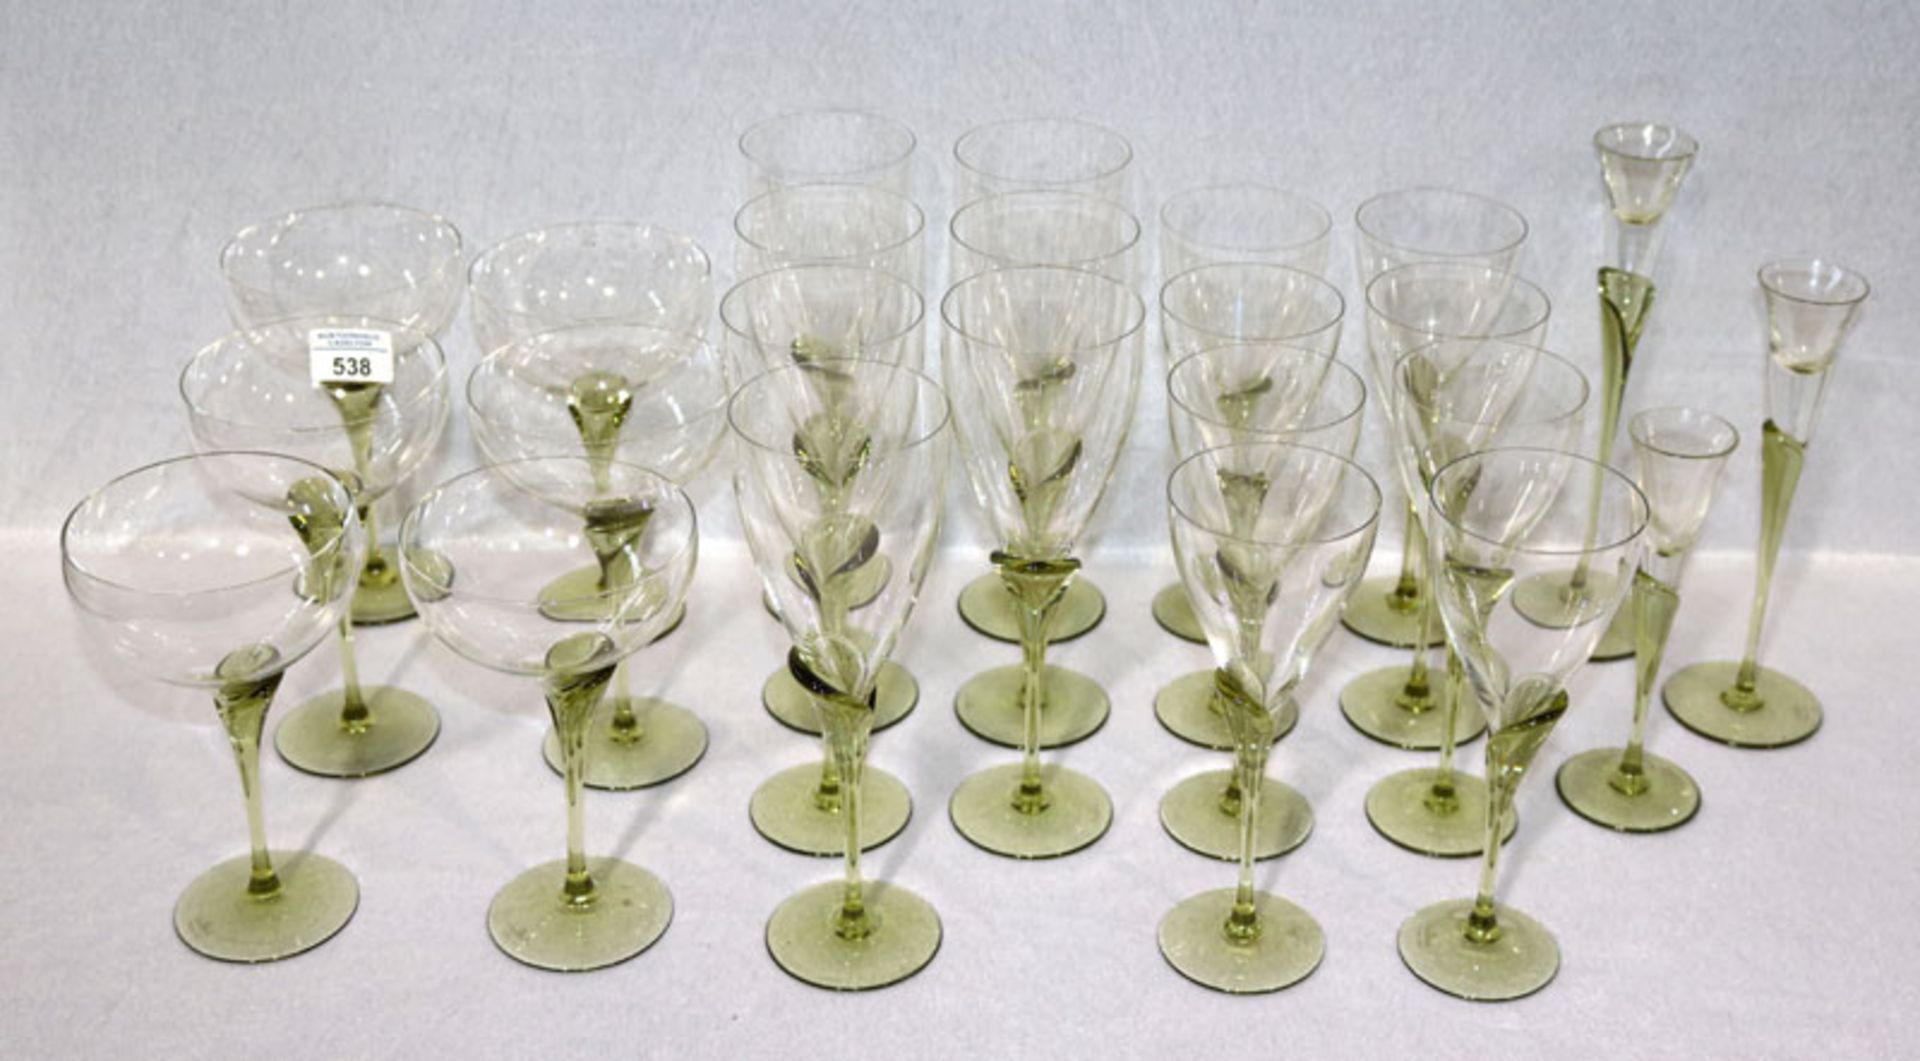 Rosenthal Trinkglas-Konvolut, Form Papyrus, 7 Rotweingläser, 8 Weißweingläser, 6 Sektschalen und 3